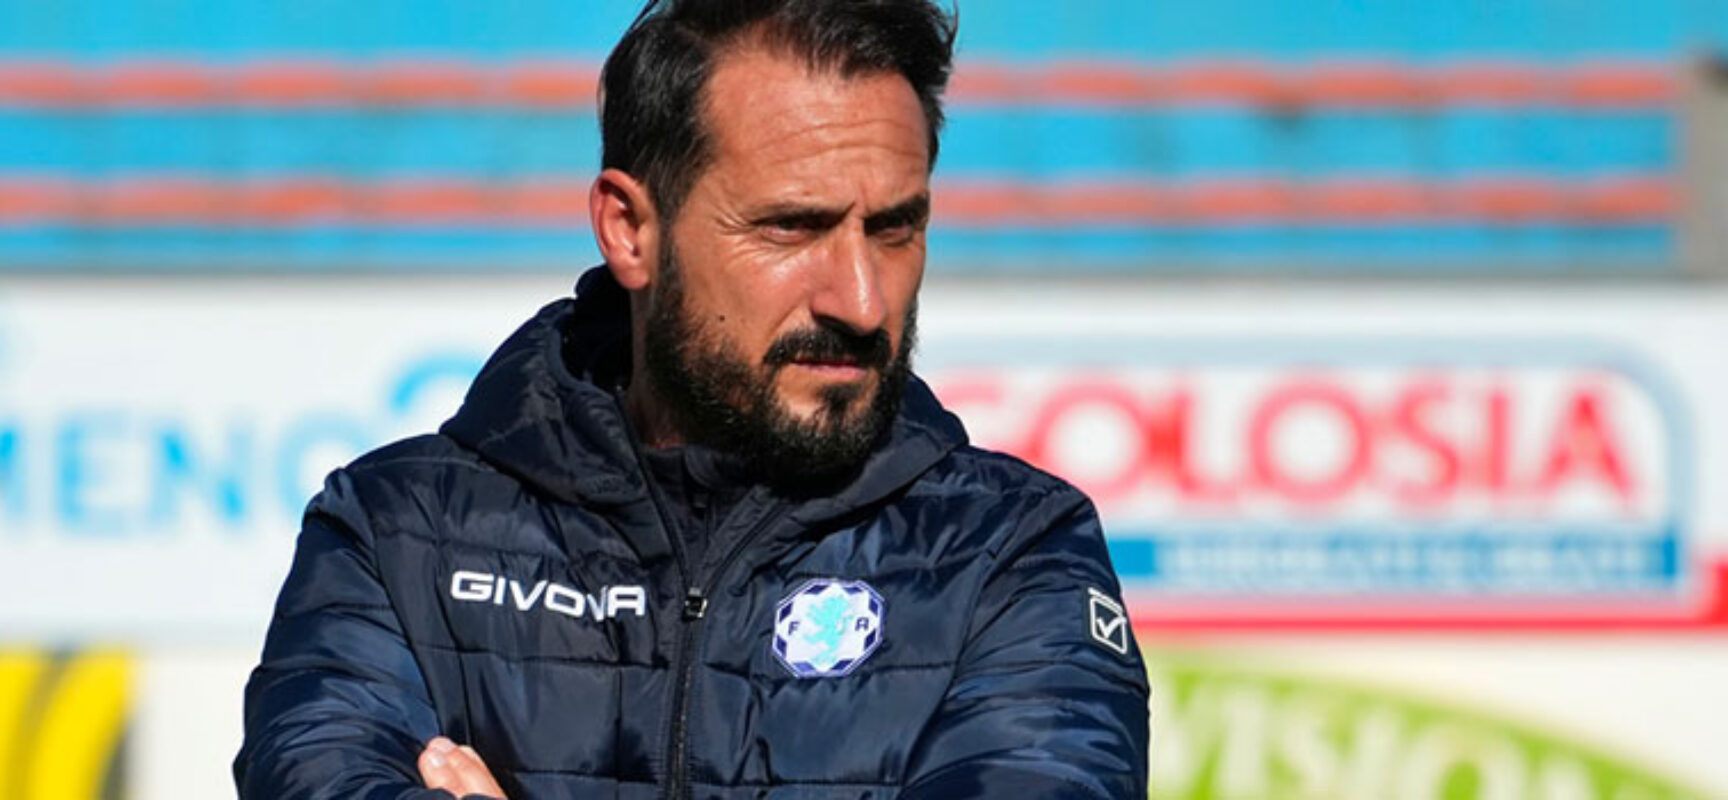 Giuseppe Scaringella è il nuovo tecnico del Bisceglie Calcio